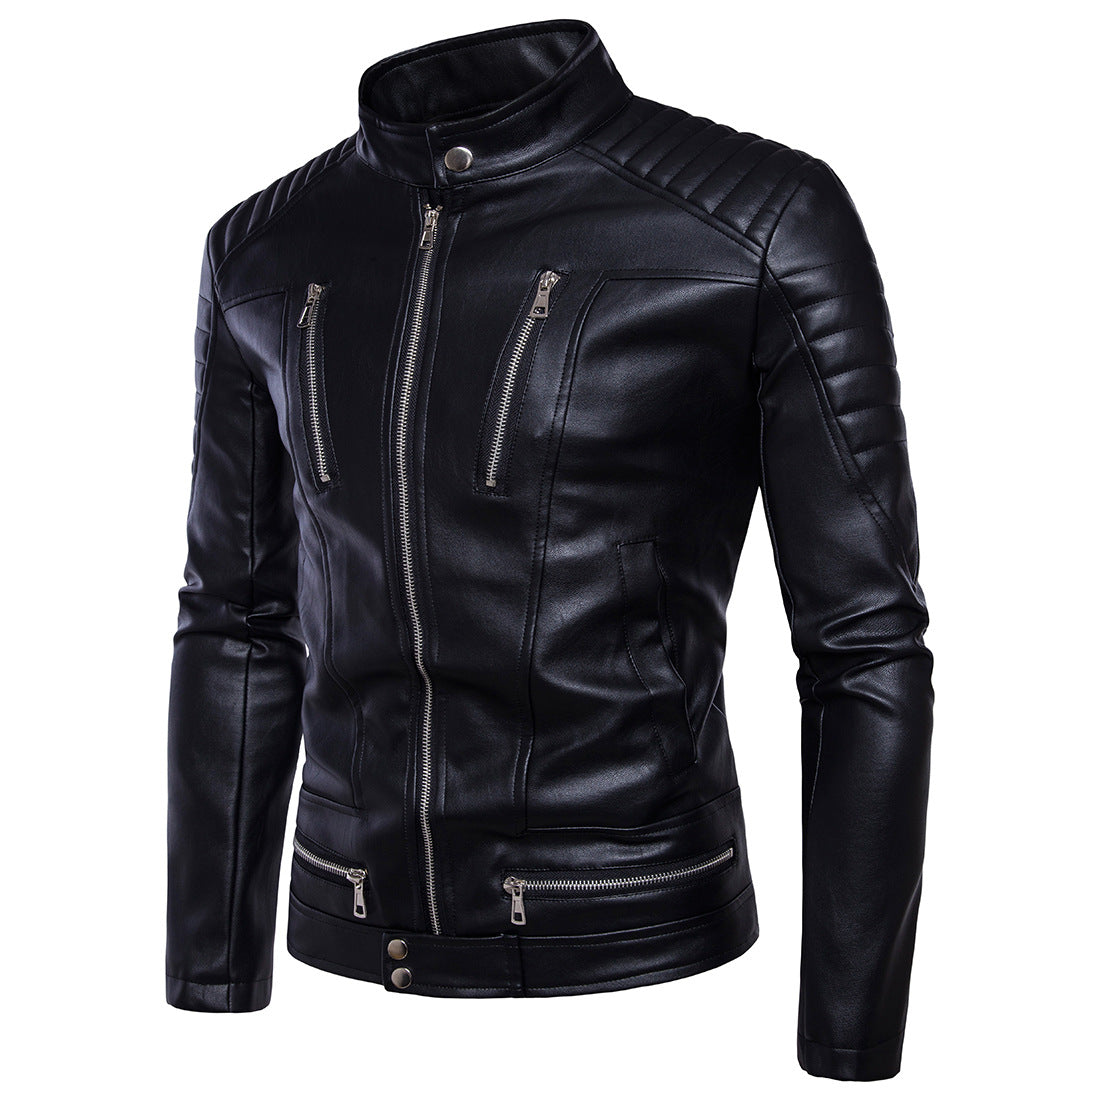 Jacheta de motociclist pentru barbati, din piele ecologica, model la moda ?i stil creativ, jacheta cu guler drept, potrivit pentru sezonul de iarna.